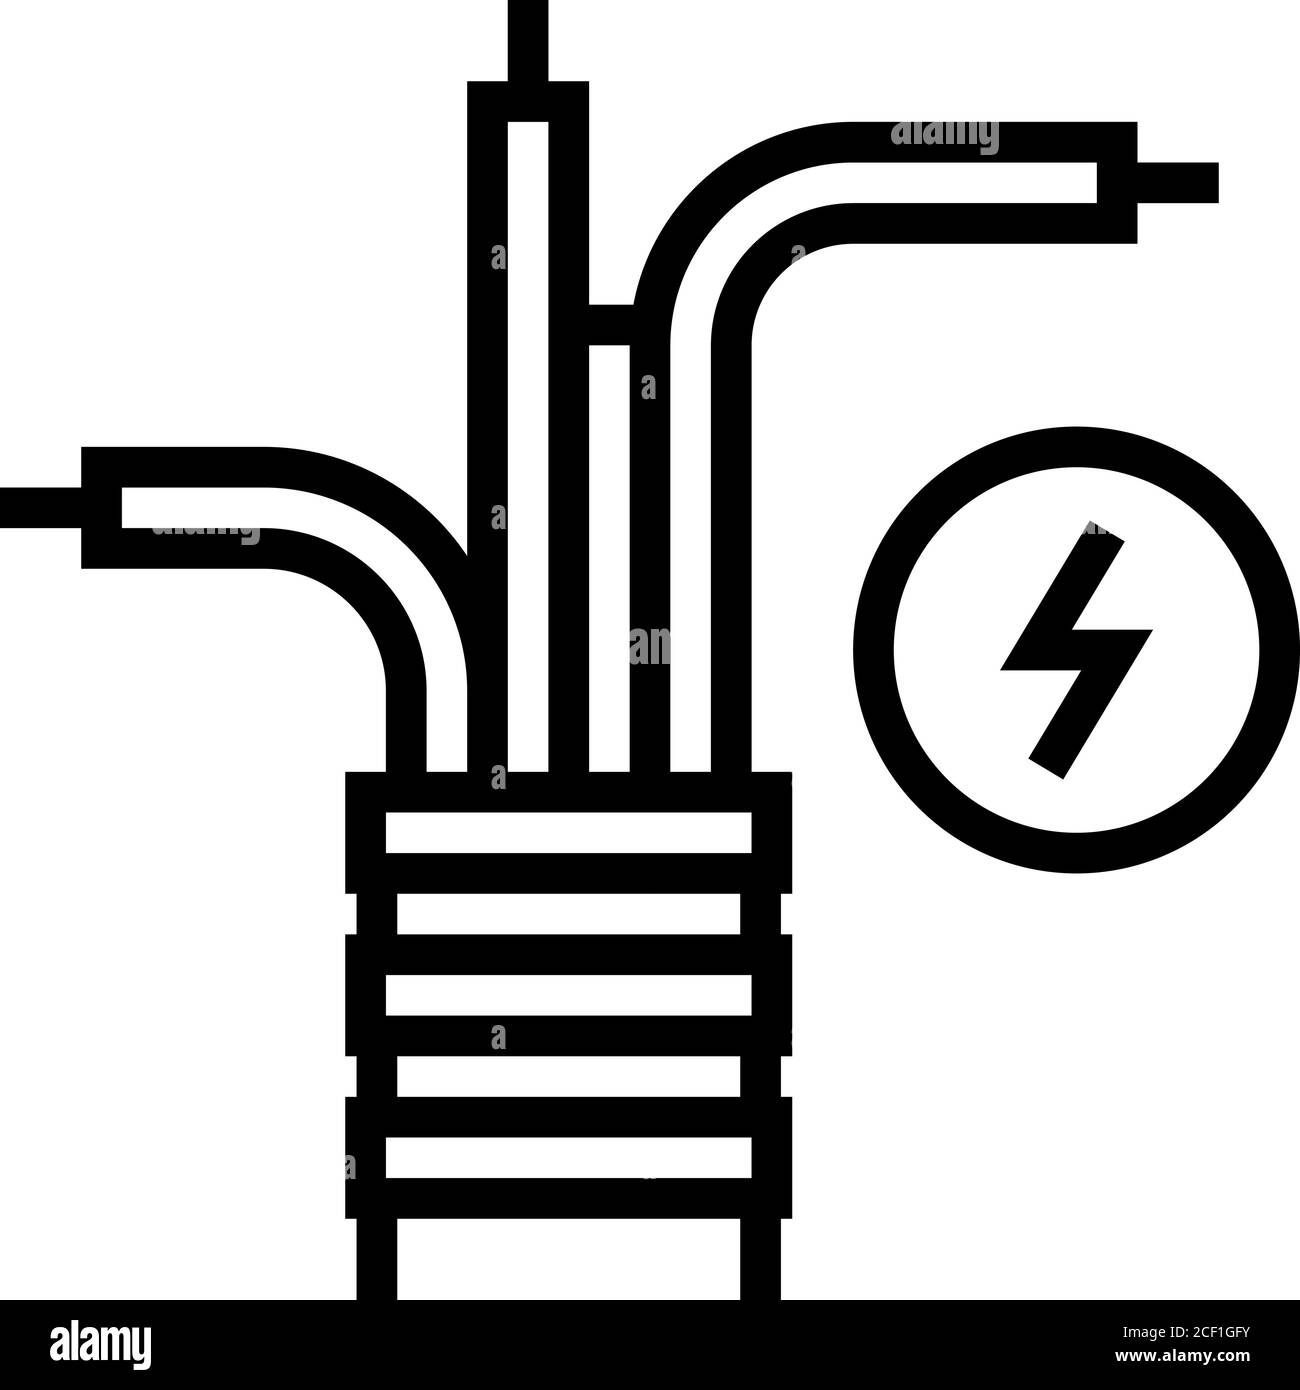 immagine vettoriale dell'icona della linea del cavo elettrico Illustrazione Vettoriale